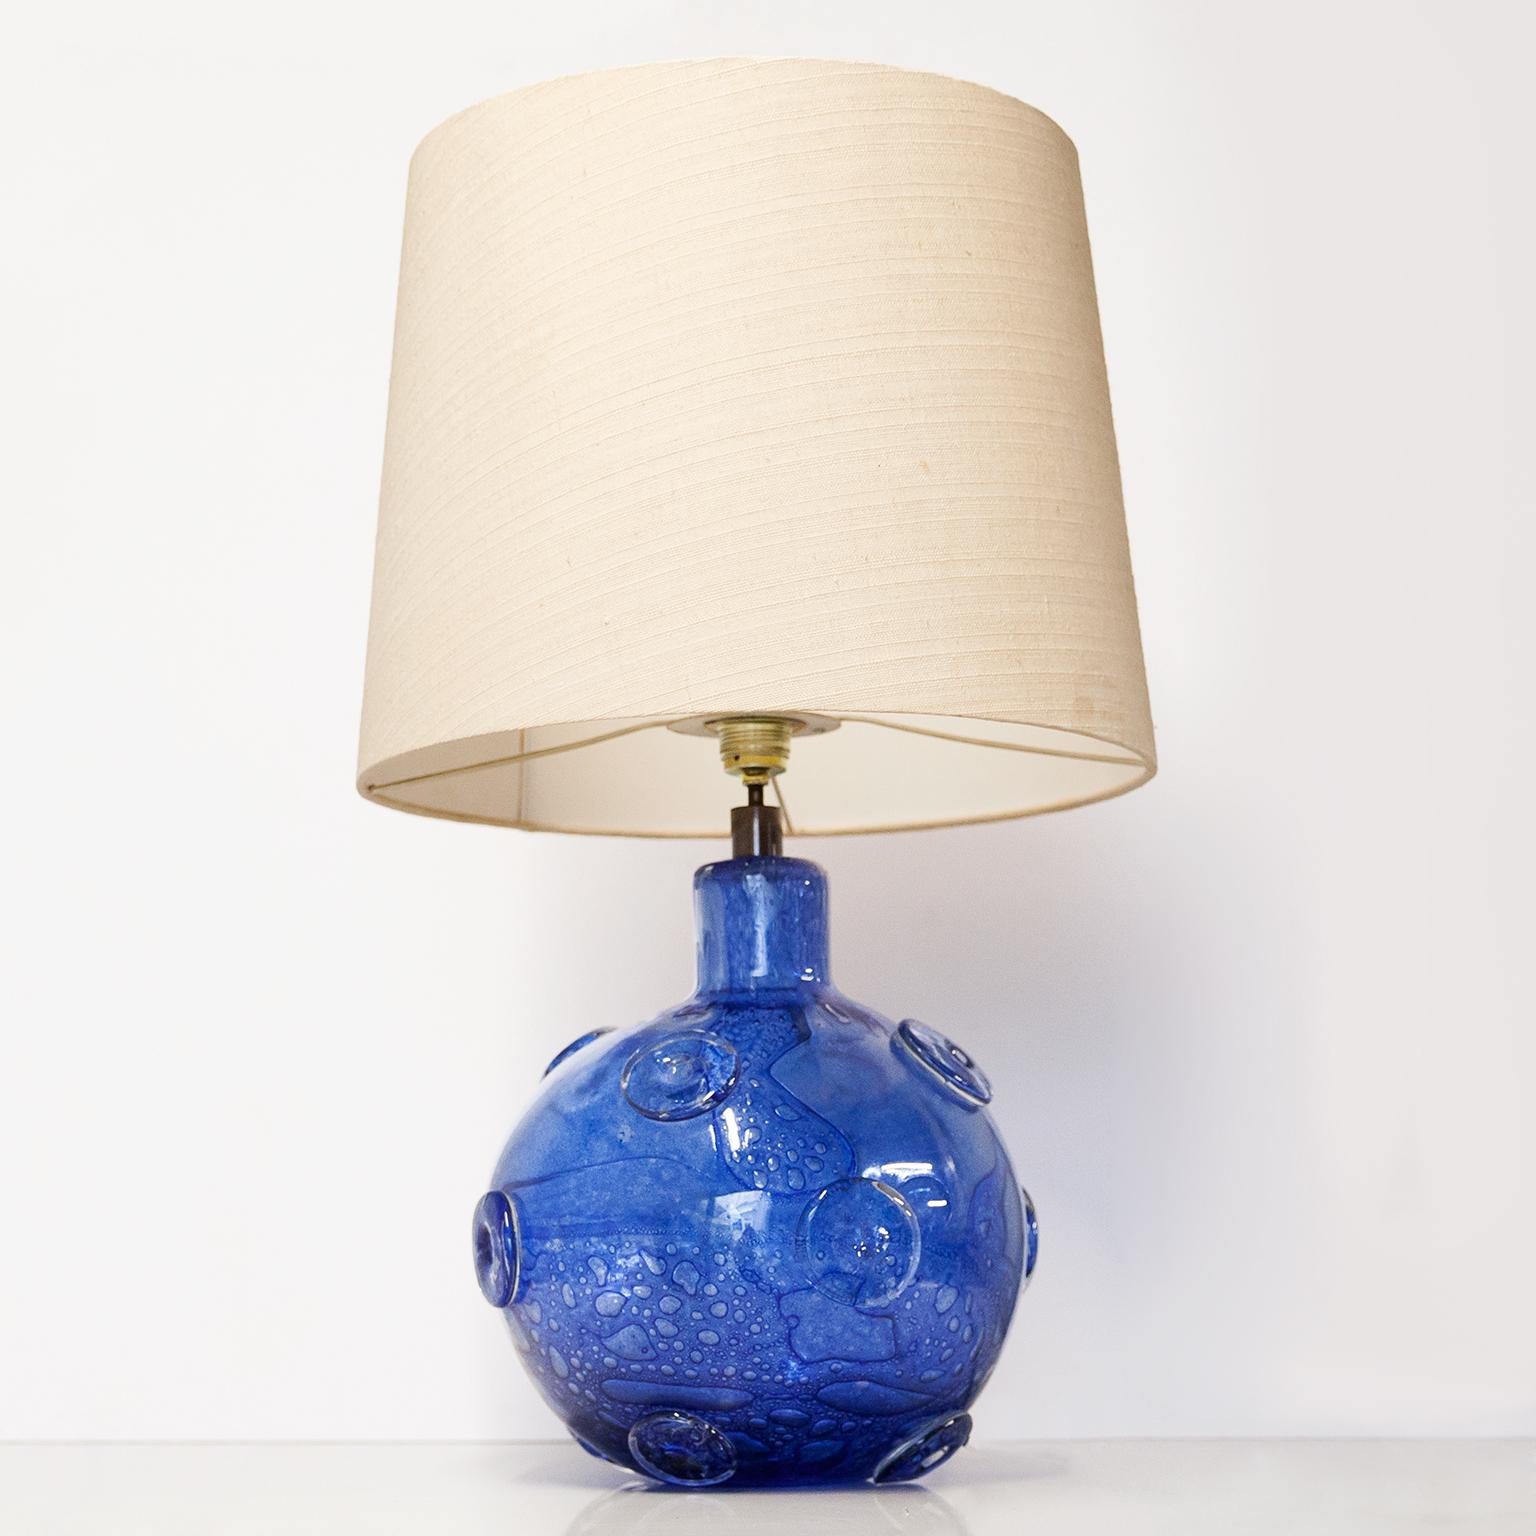 Énorme version de la lampe de table Efeso d'Ercol Barovier fabriquée par Barovier&Toso dans les années 1940 en Italie. Base ronde en verre, avec un motif bleu et des boutons en forme de prunelles sur la surface. Elle est similaire à la lampe